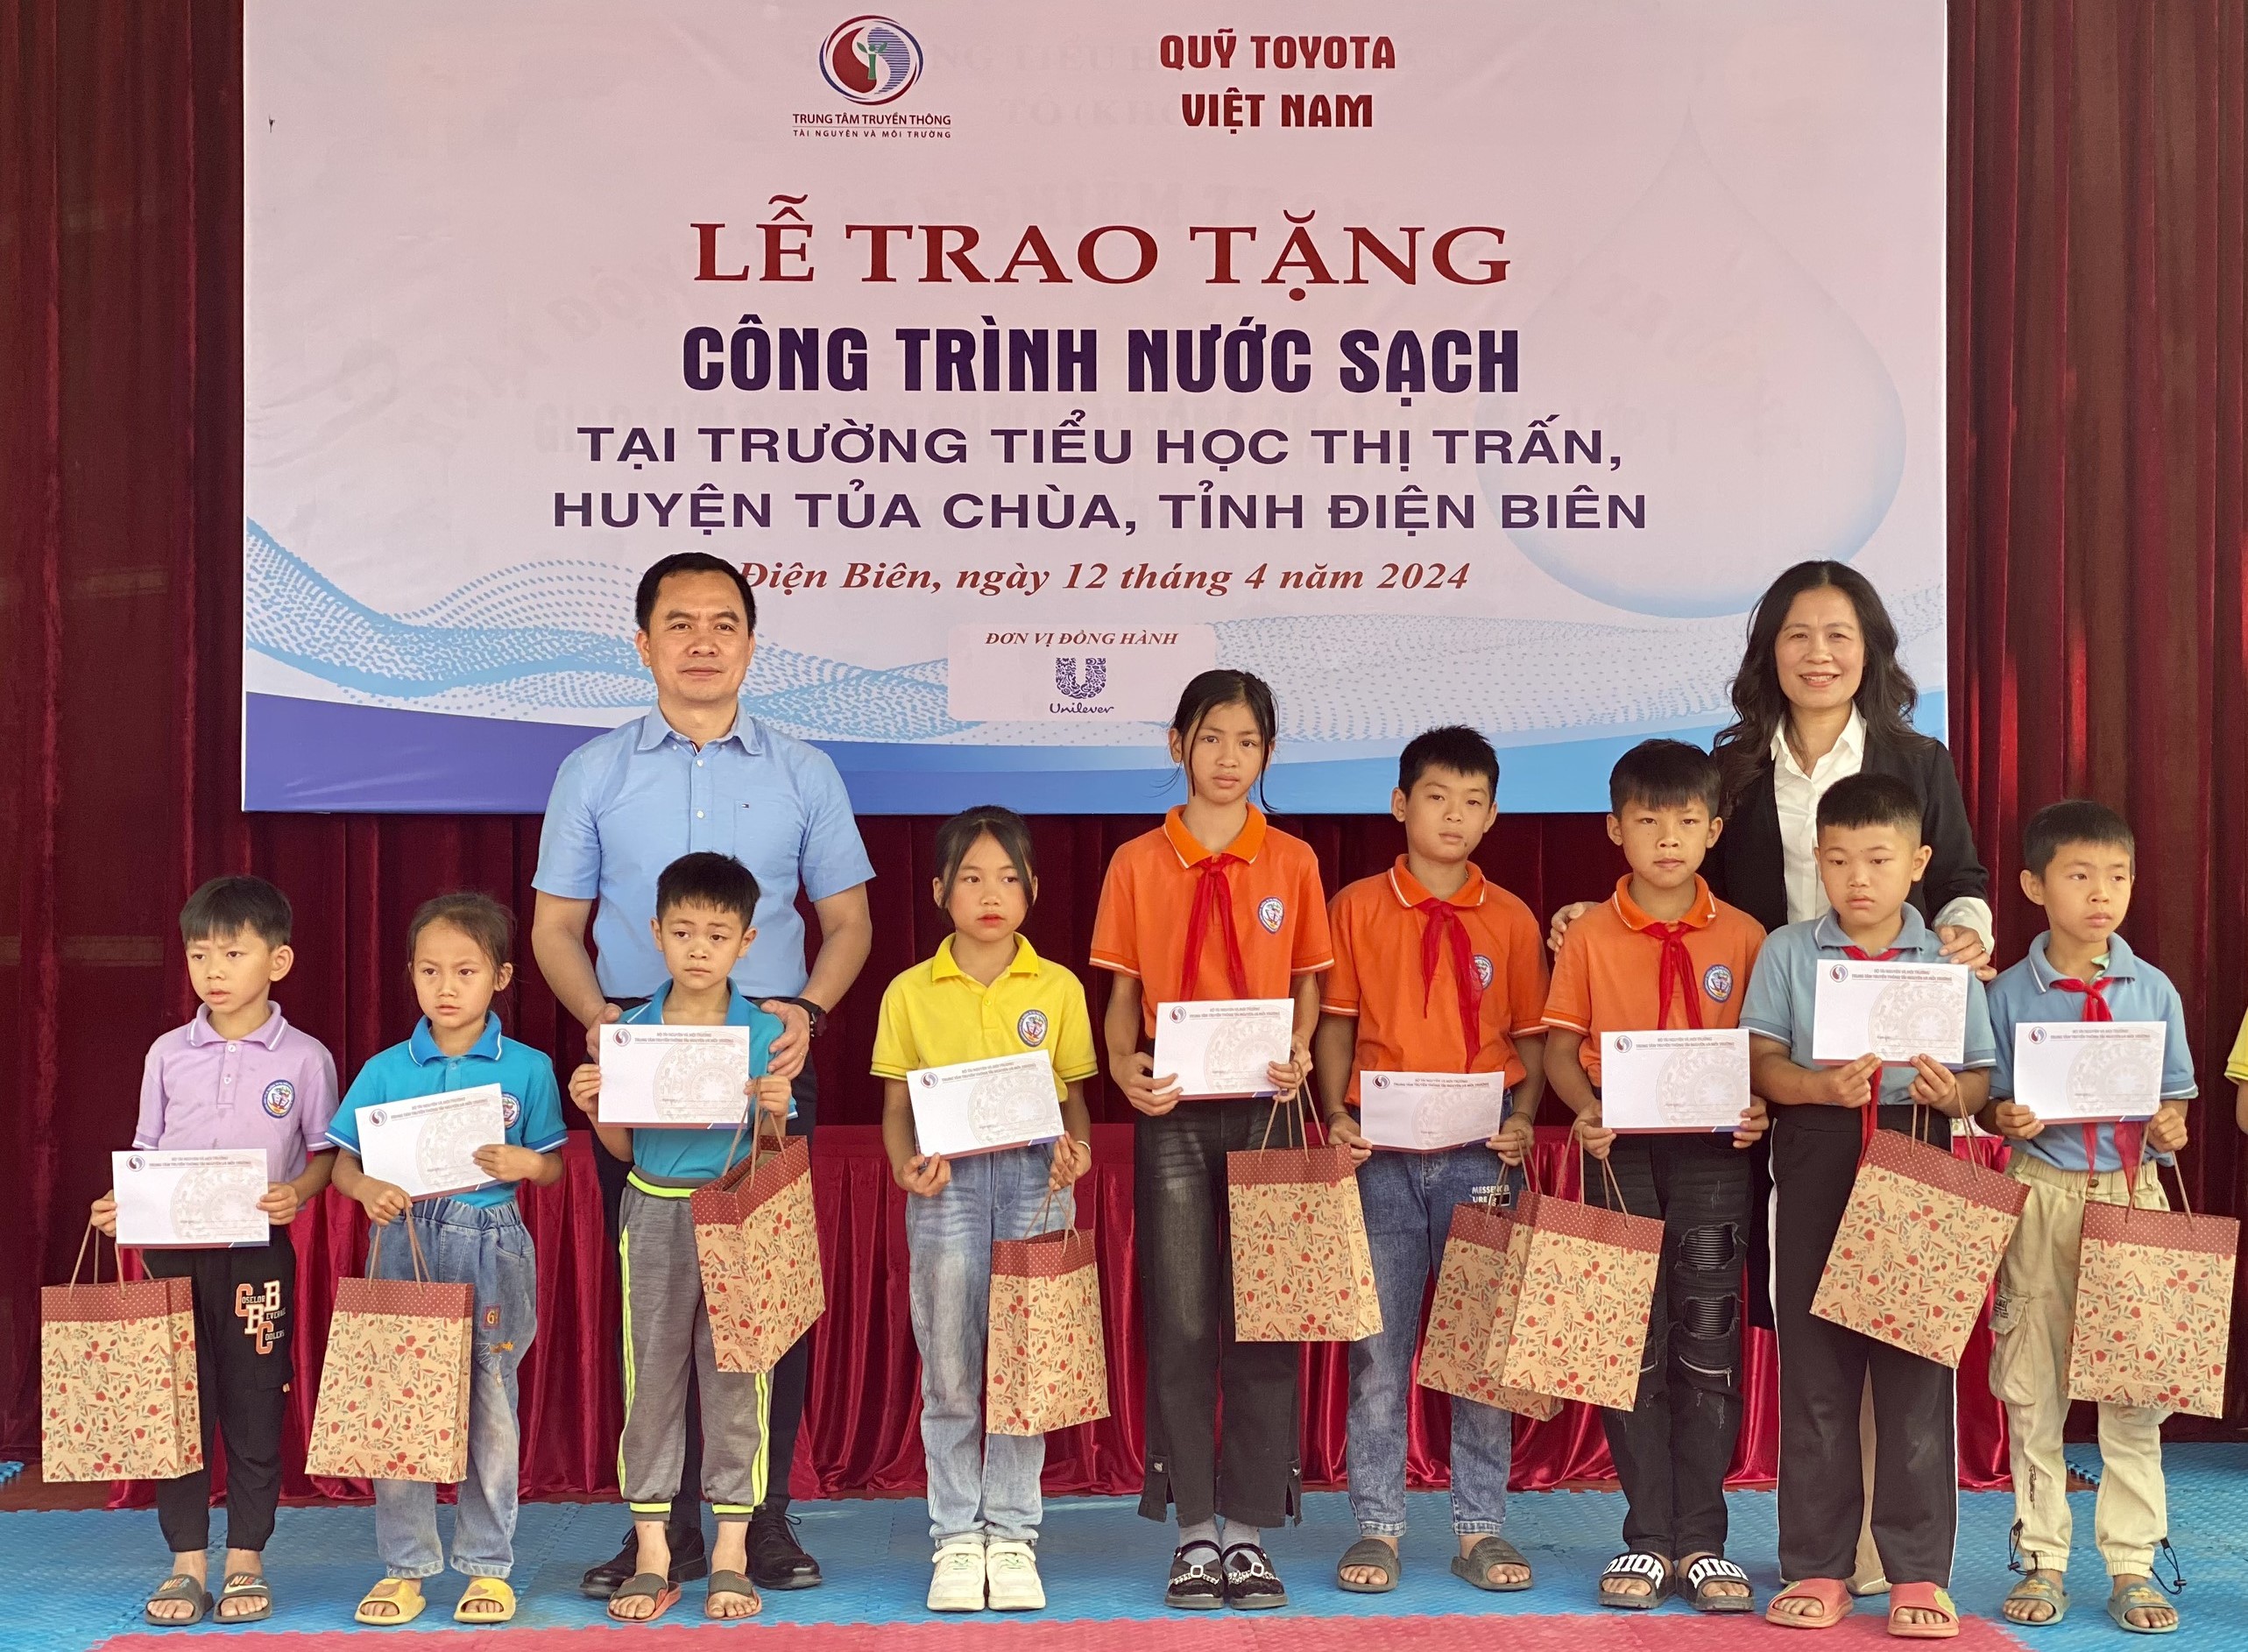 Quỹ Toyota Việt Nam bàn giao công trình nước sạch cho trường Tiểu học Thị Trấn tại tỉnh Điện Biên